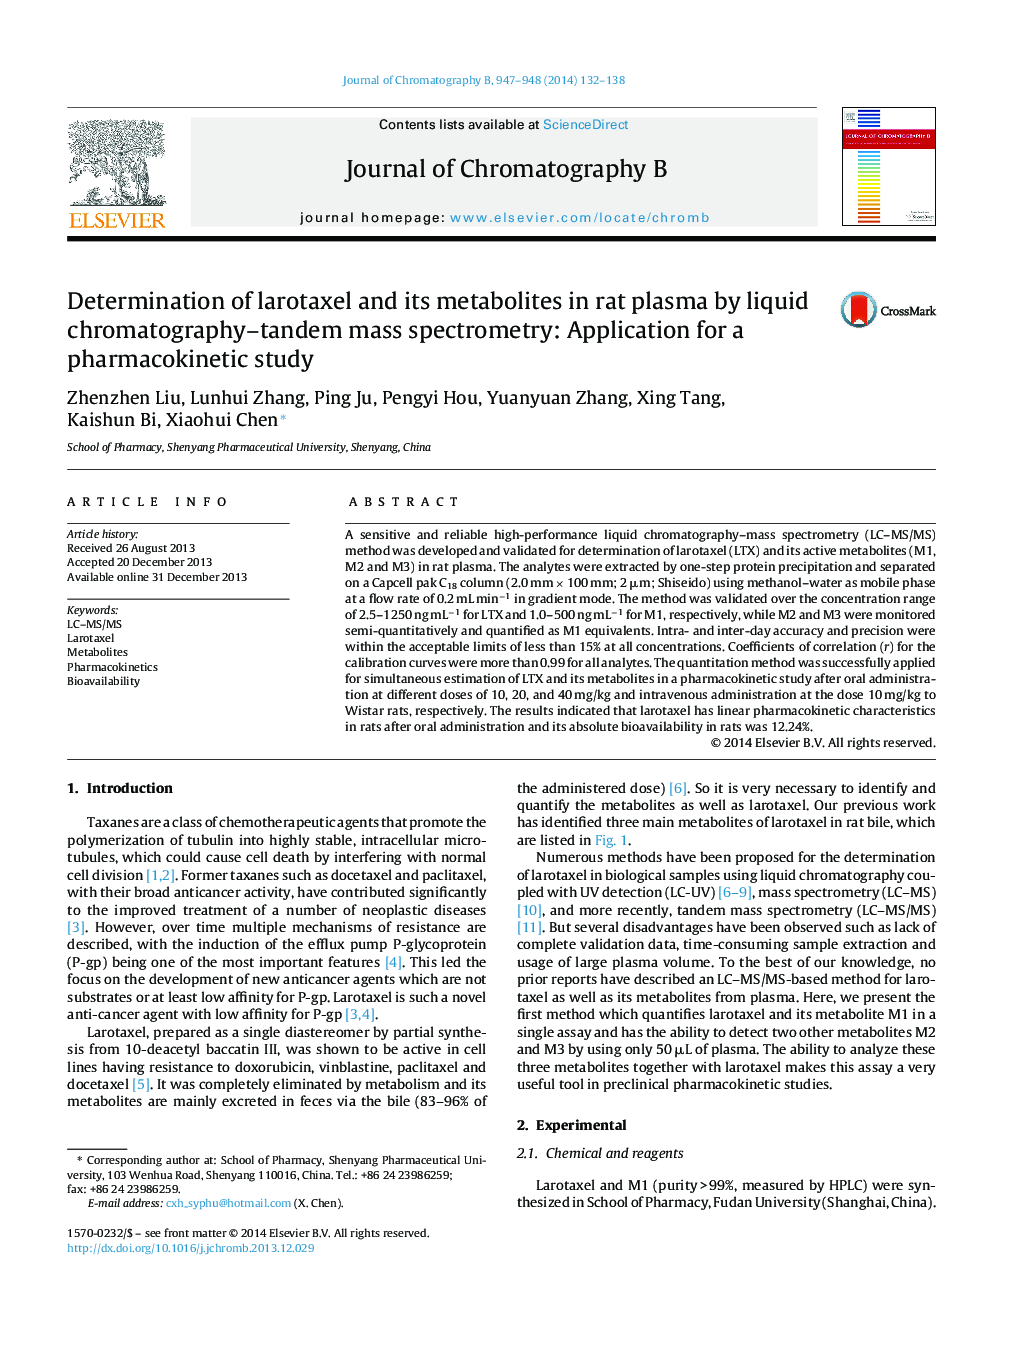 تعیین لاروتاکسل و متابولیت های آن در پلاسمای موش با استفاده از اسپکترومتری جرمی کروماتوگرافی مایع: کاربرد برای مطالعه فارماکوکینتیک 